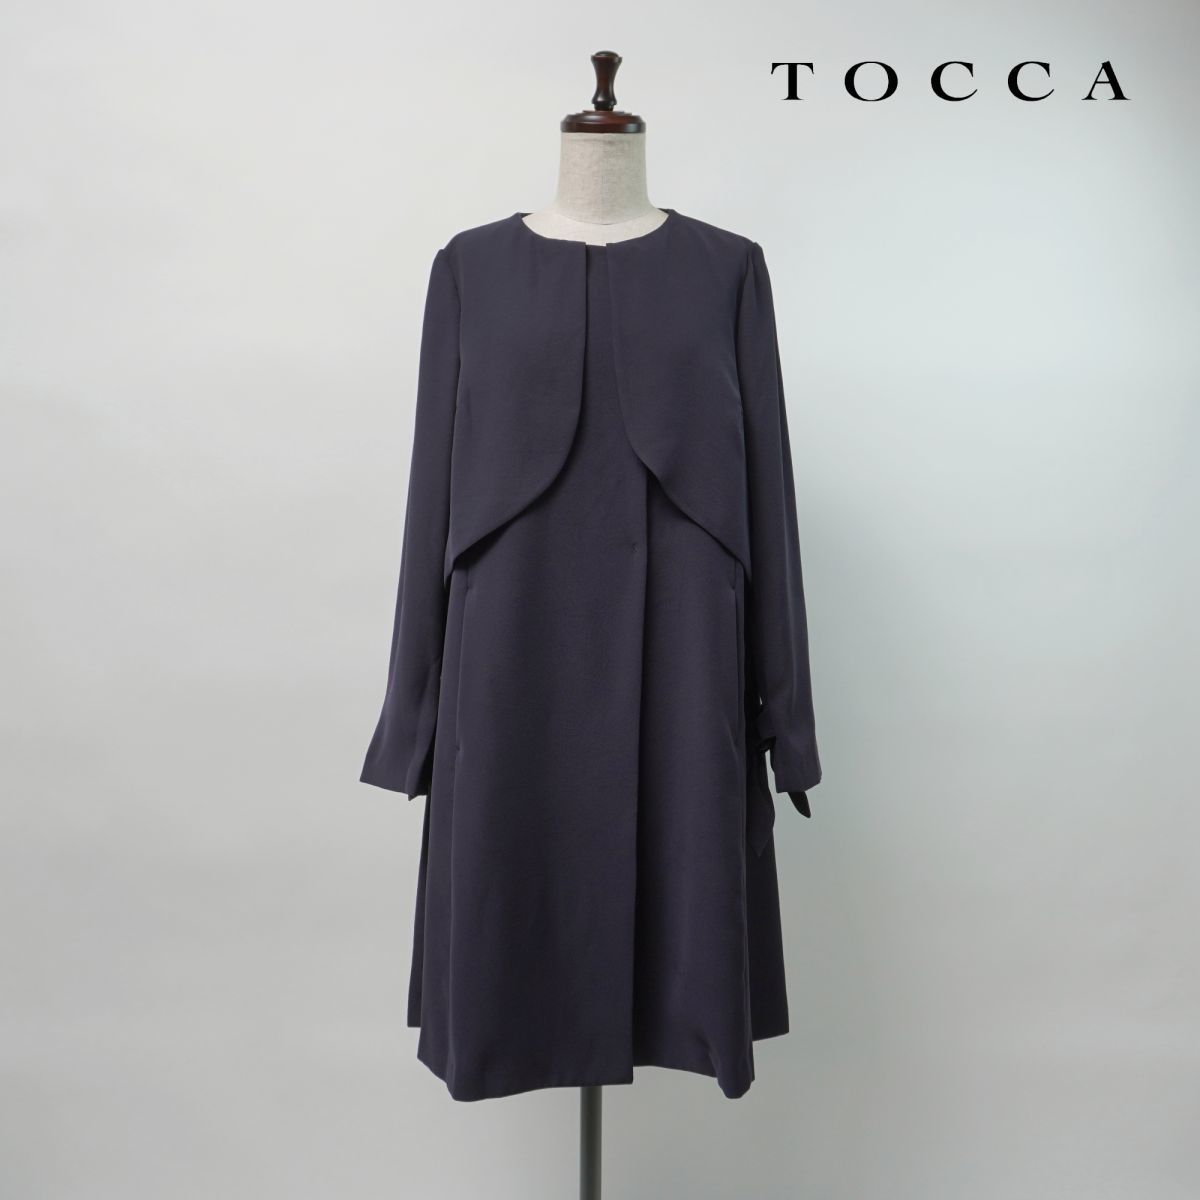  прекрасный товар TOCCA Tocca передний дизайн пальто рукав лента внешний женский чёрный черный размер 4*LC1463